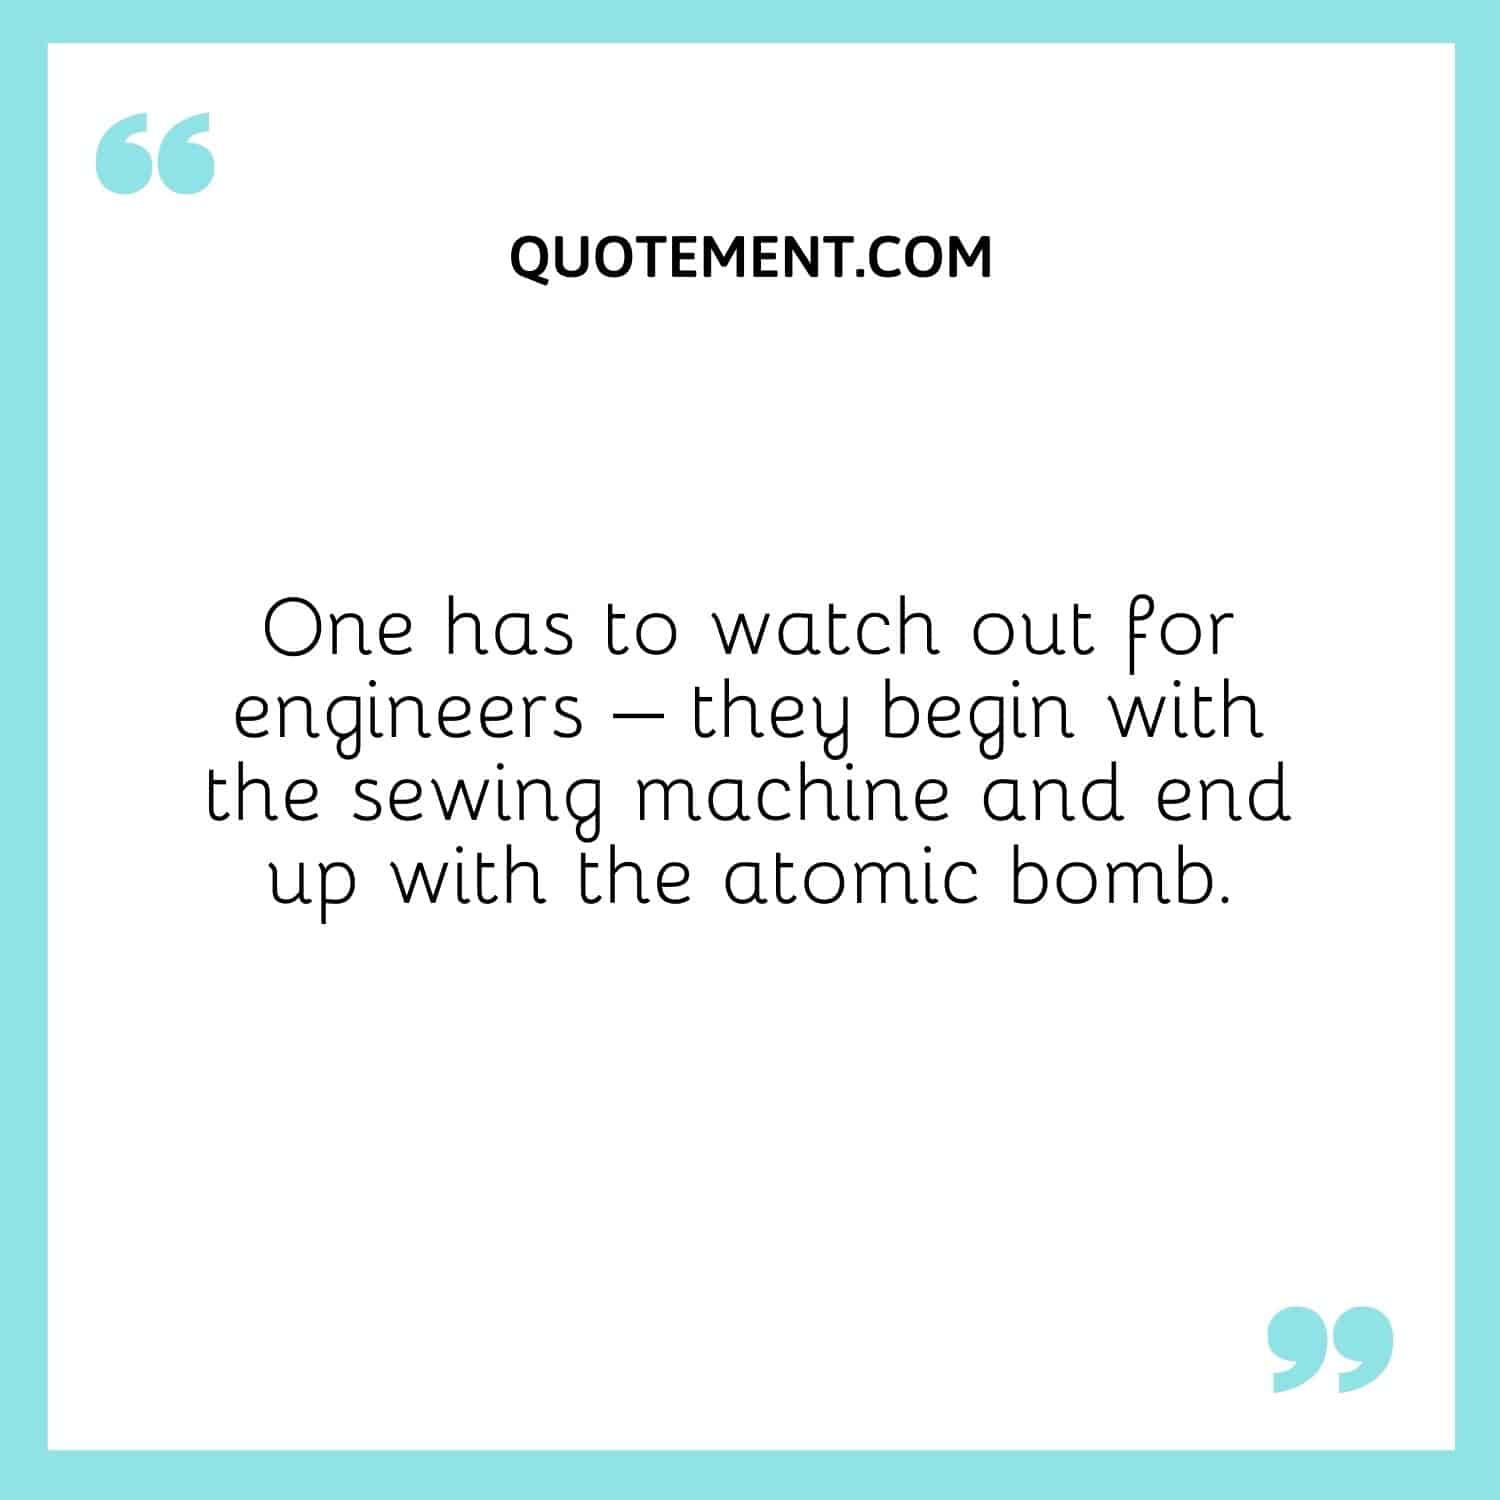 Hay que tener cuidado con los ingenieros: empiezan con la máquina de coser y acaban con la bomba atómica.